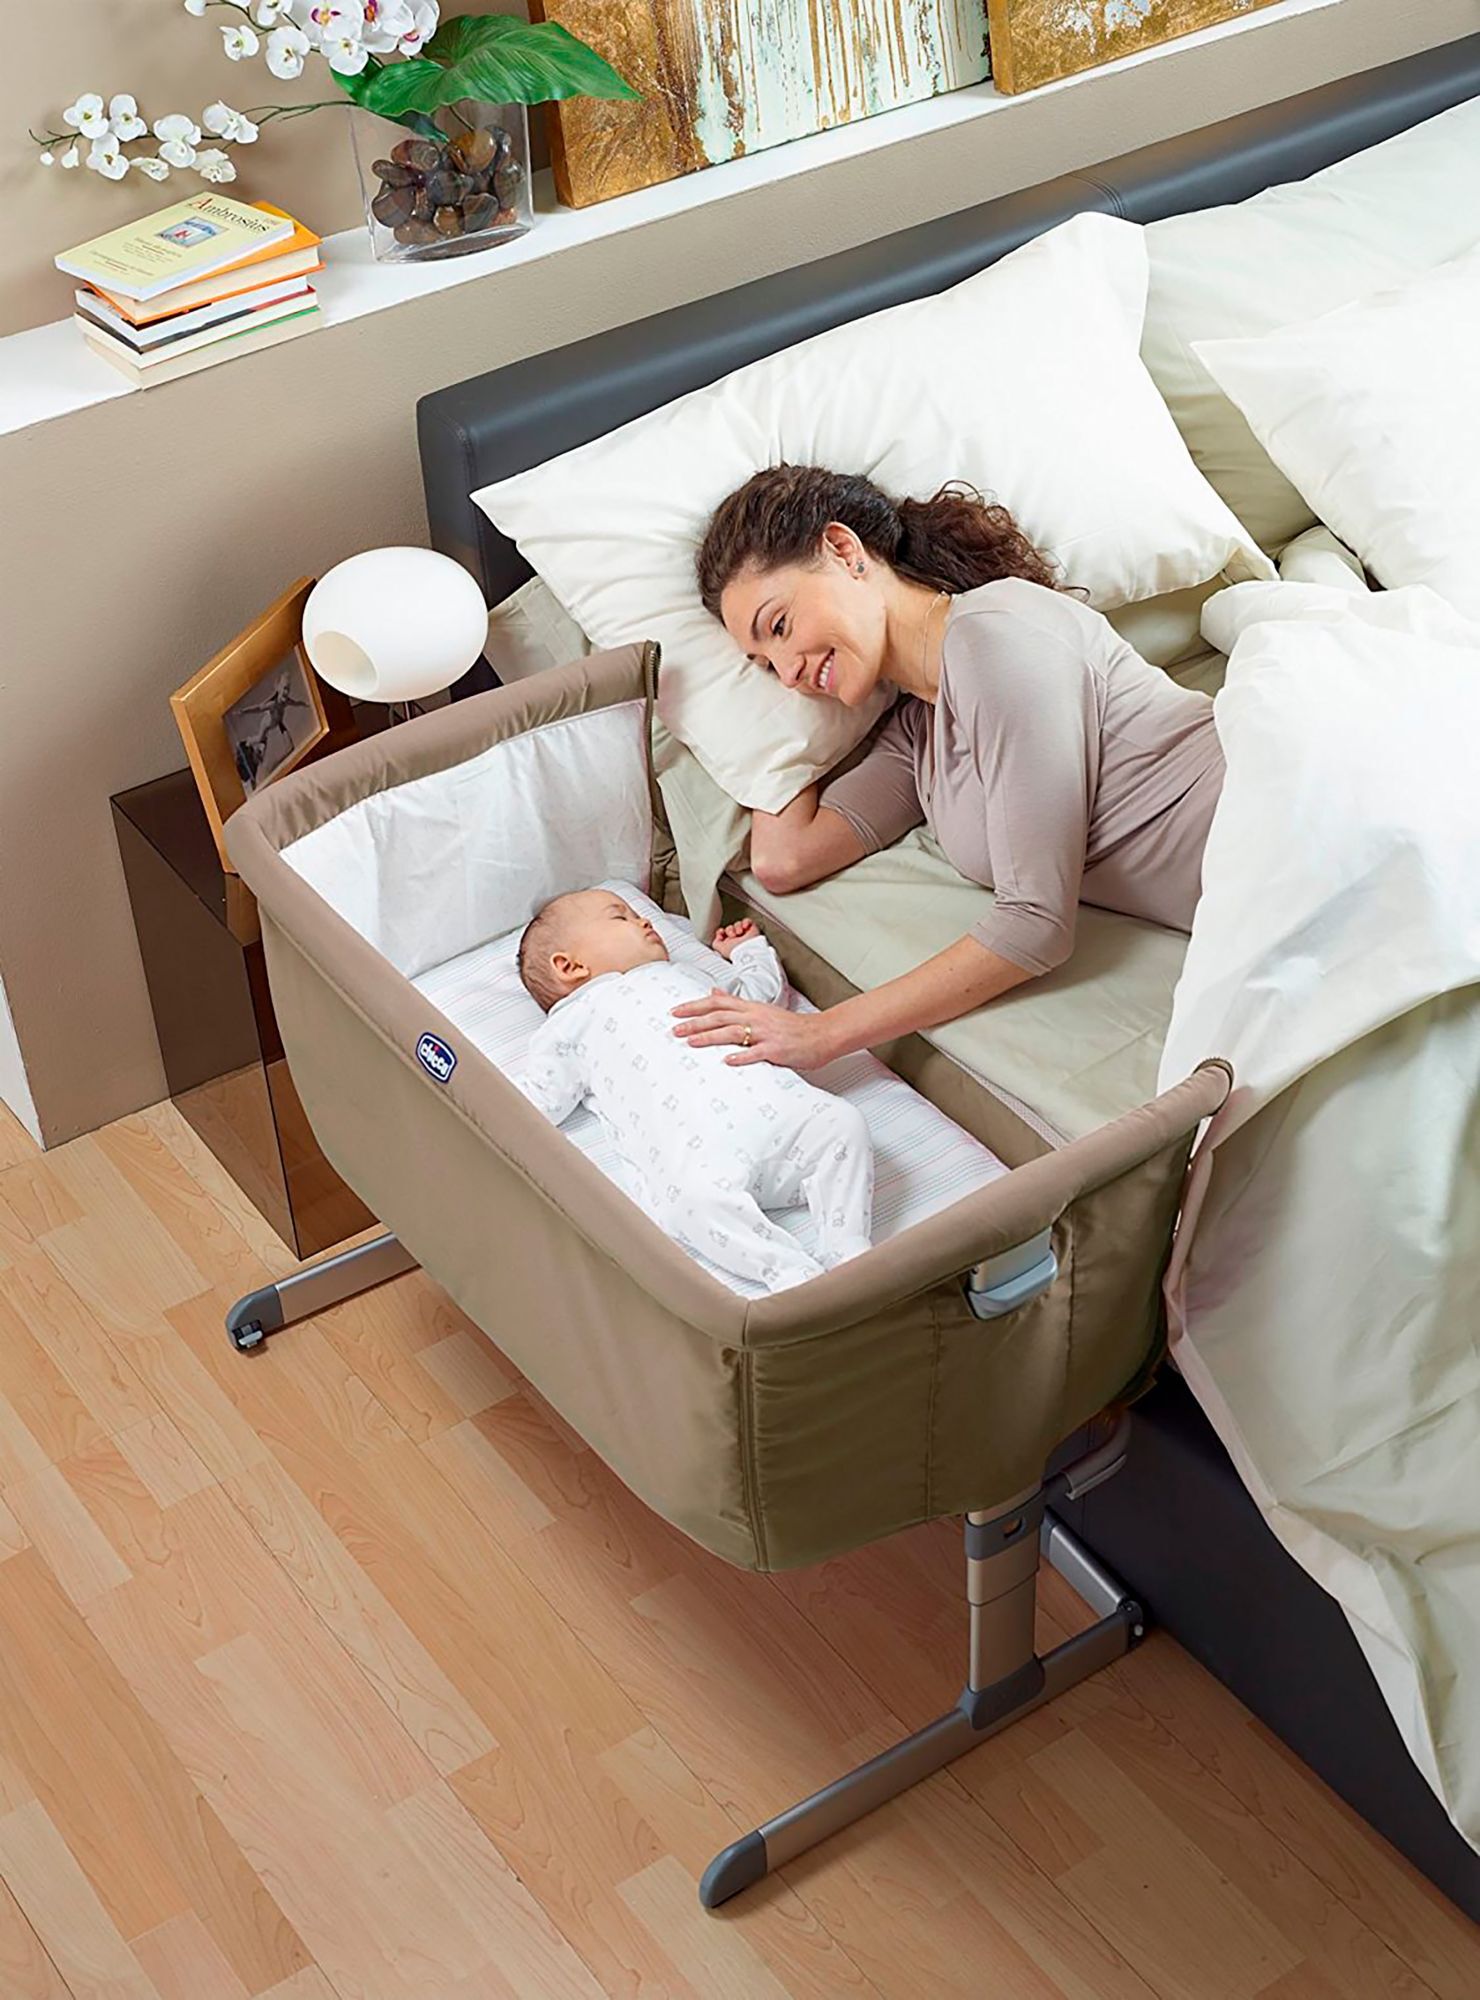 Как поставить детскую кроватку в спальне родителей: полезные советы и особенности размещения кроватки